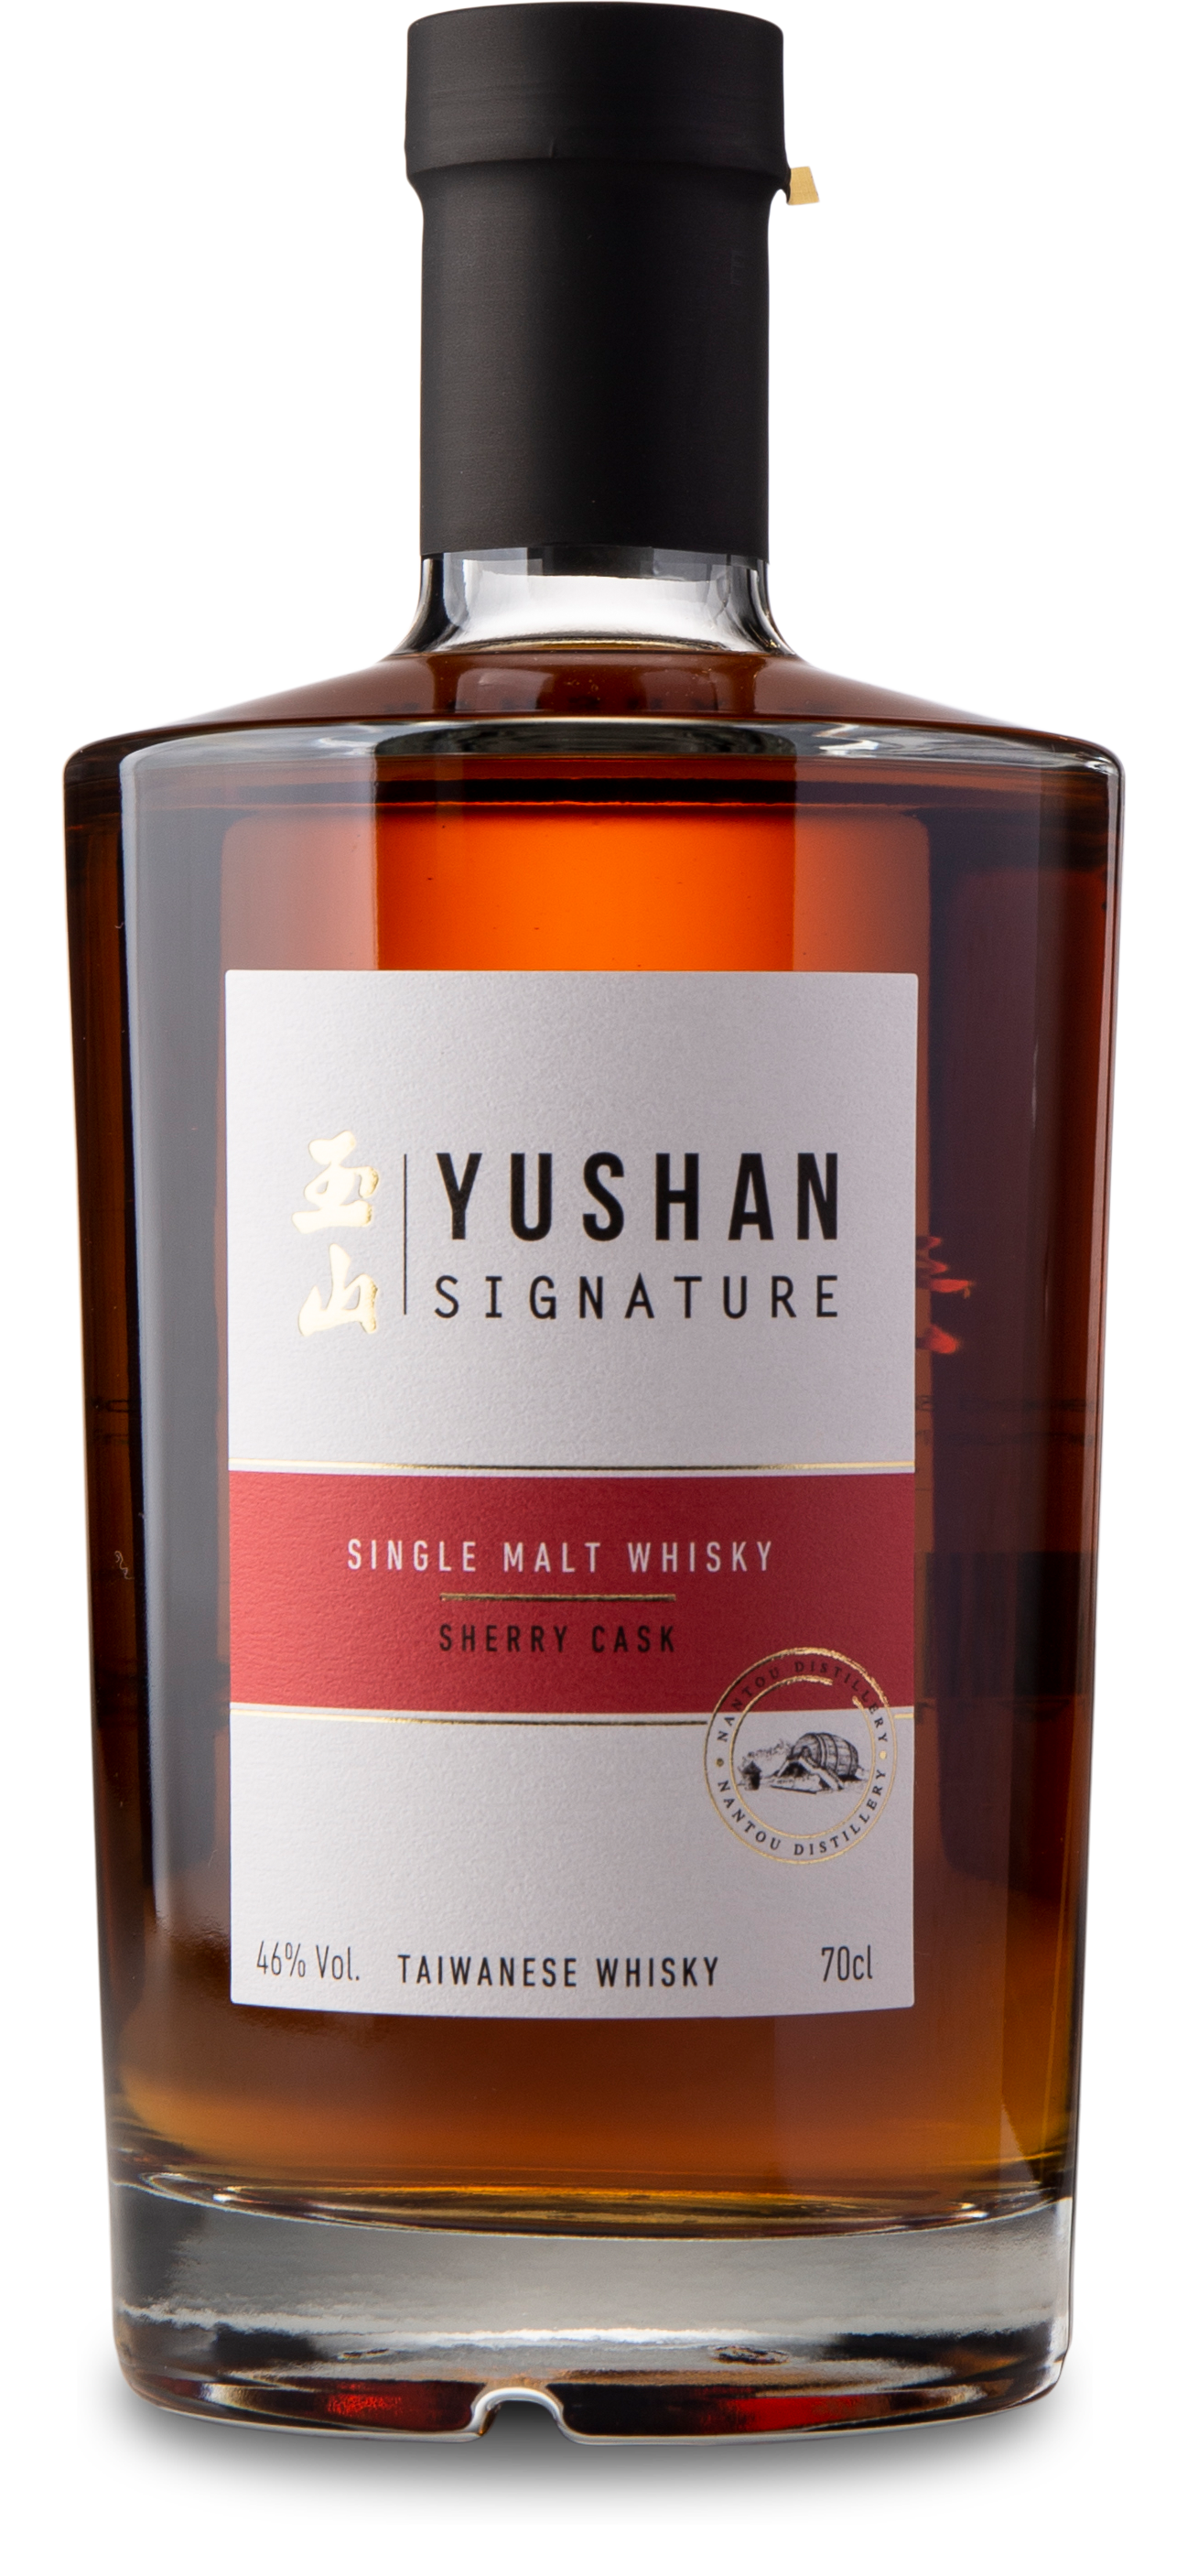 Yushan Signature Sherry Cask 46%, 70 cl